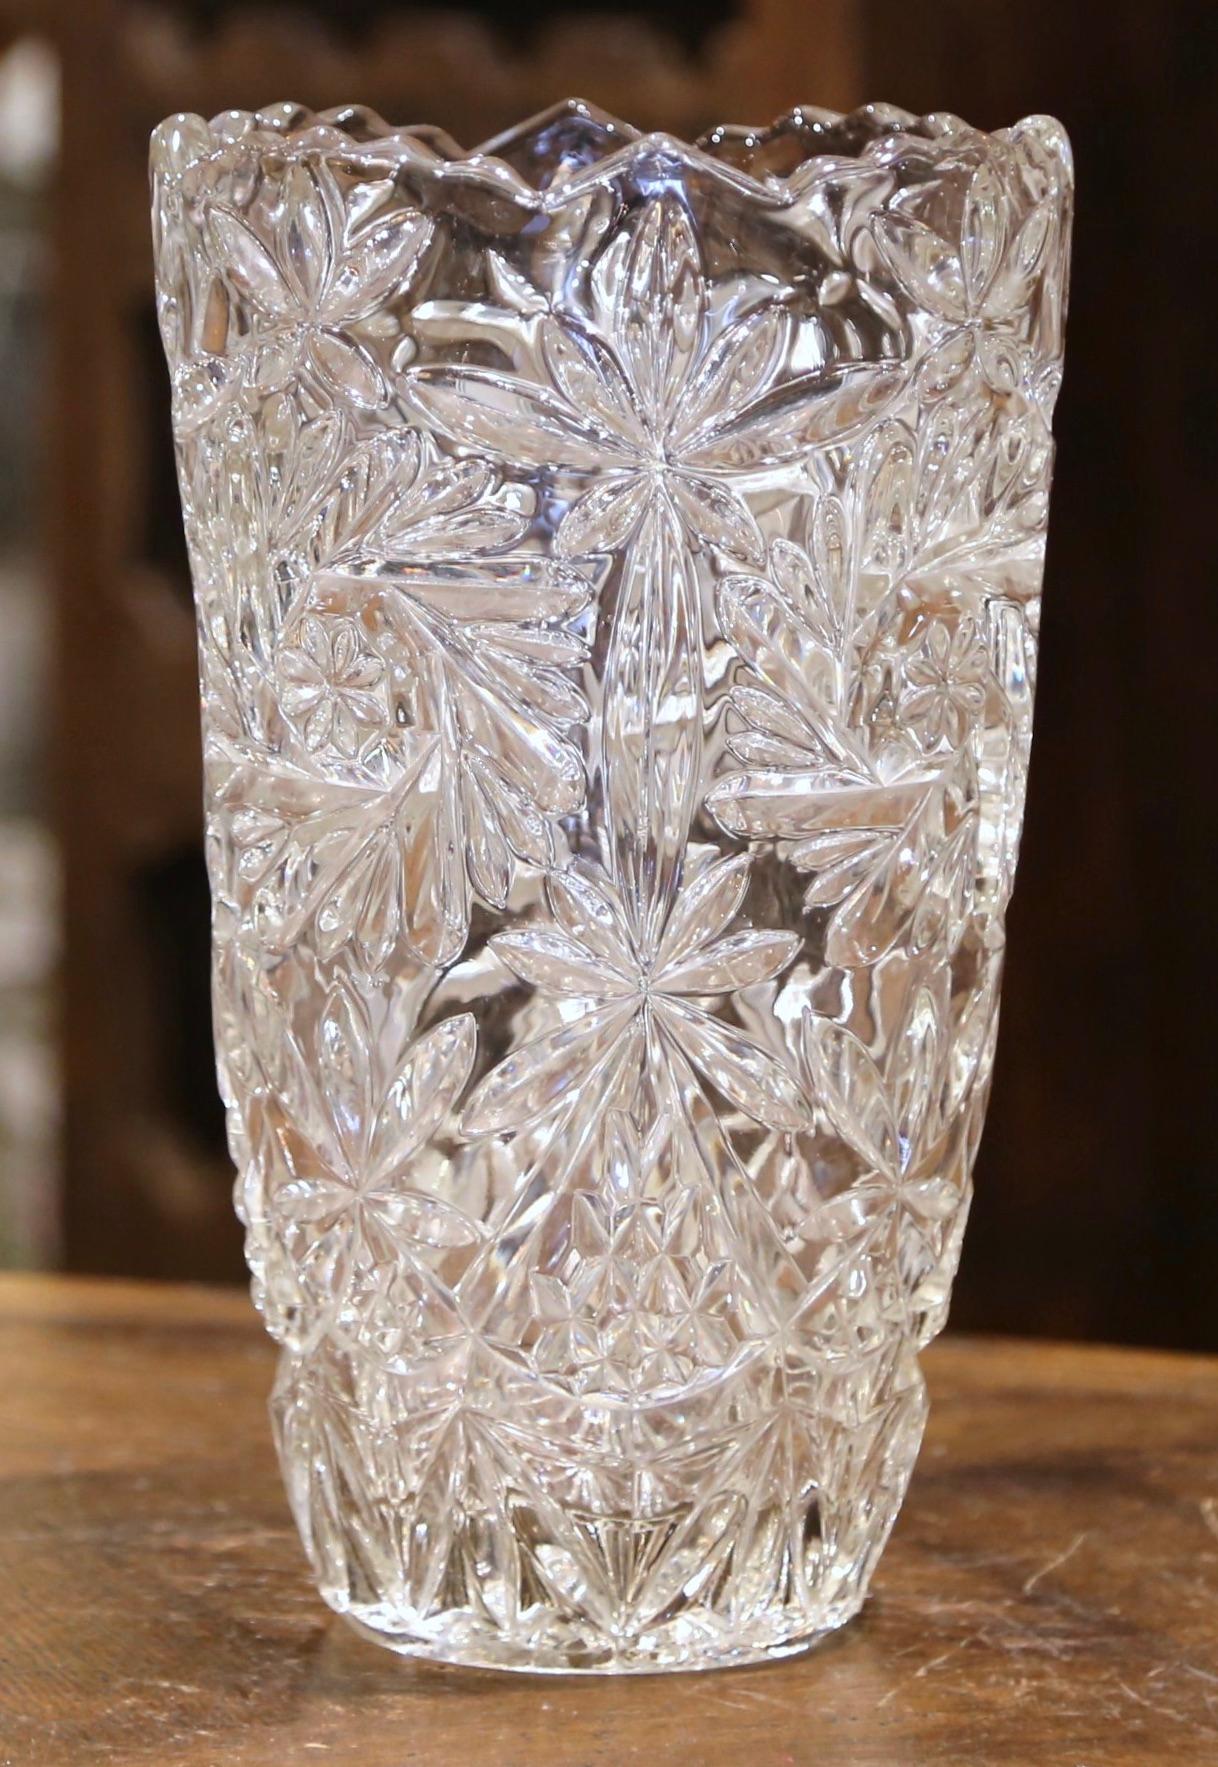 Dekorieren Sie eine Konsole oder ein Buffet mit dieser eleganten Glasvase. Das große, luxuriöse Glasgefäß wurde um 1970 in Frankreich hergestellt und hat eine runde Form mit einem geriffelten und gewellten Rand. Es ist durchgehend mit geätzten